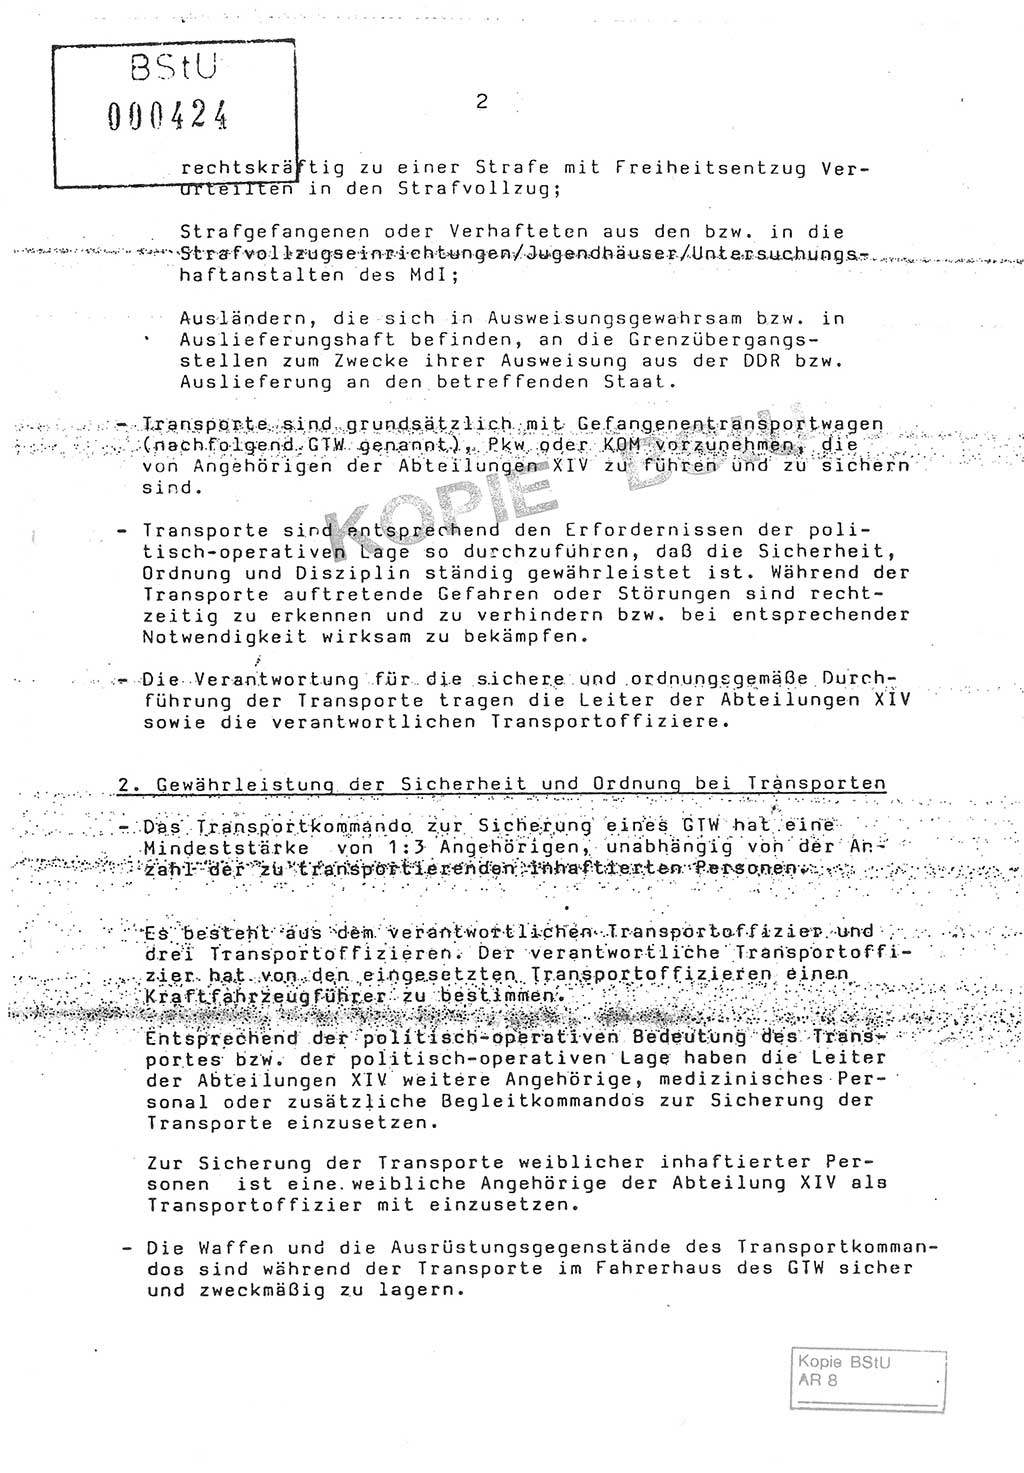 Anweisung Nr. 4/86 zur Sicherung der Transporte Inhaftierter durch Angehörige der Abteilungen ⅩⅣ, Transportsicherungsanweisung, Ministerium für Staatssicherheit (MfS) [Deutsche Demokratische Republik (DDR)], Abteilung ⅩⅣ, Leiter, Vertrauliche Verschlußsache (VVS) o008-18/86, Berlin, 29.1.1986, Seite 2 (Anw. 4/86 MfS DDR Abt. ⅩⅣ Ltr. VVS o008-18/86 1986, S. 2)